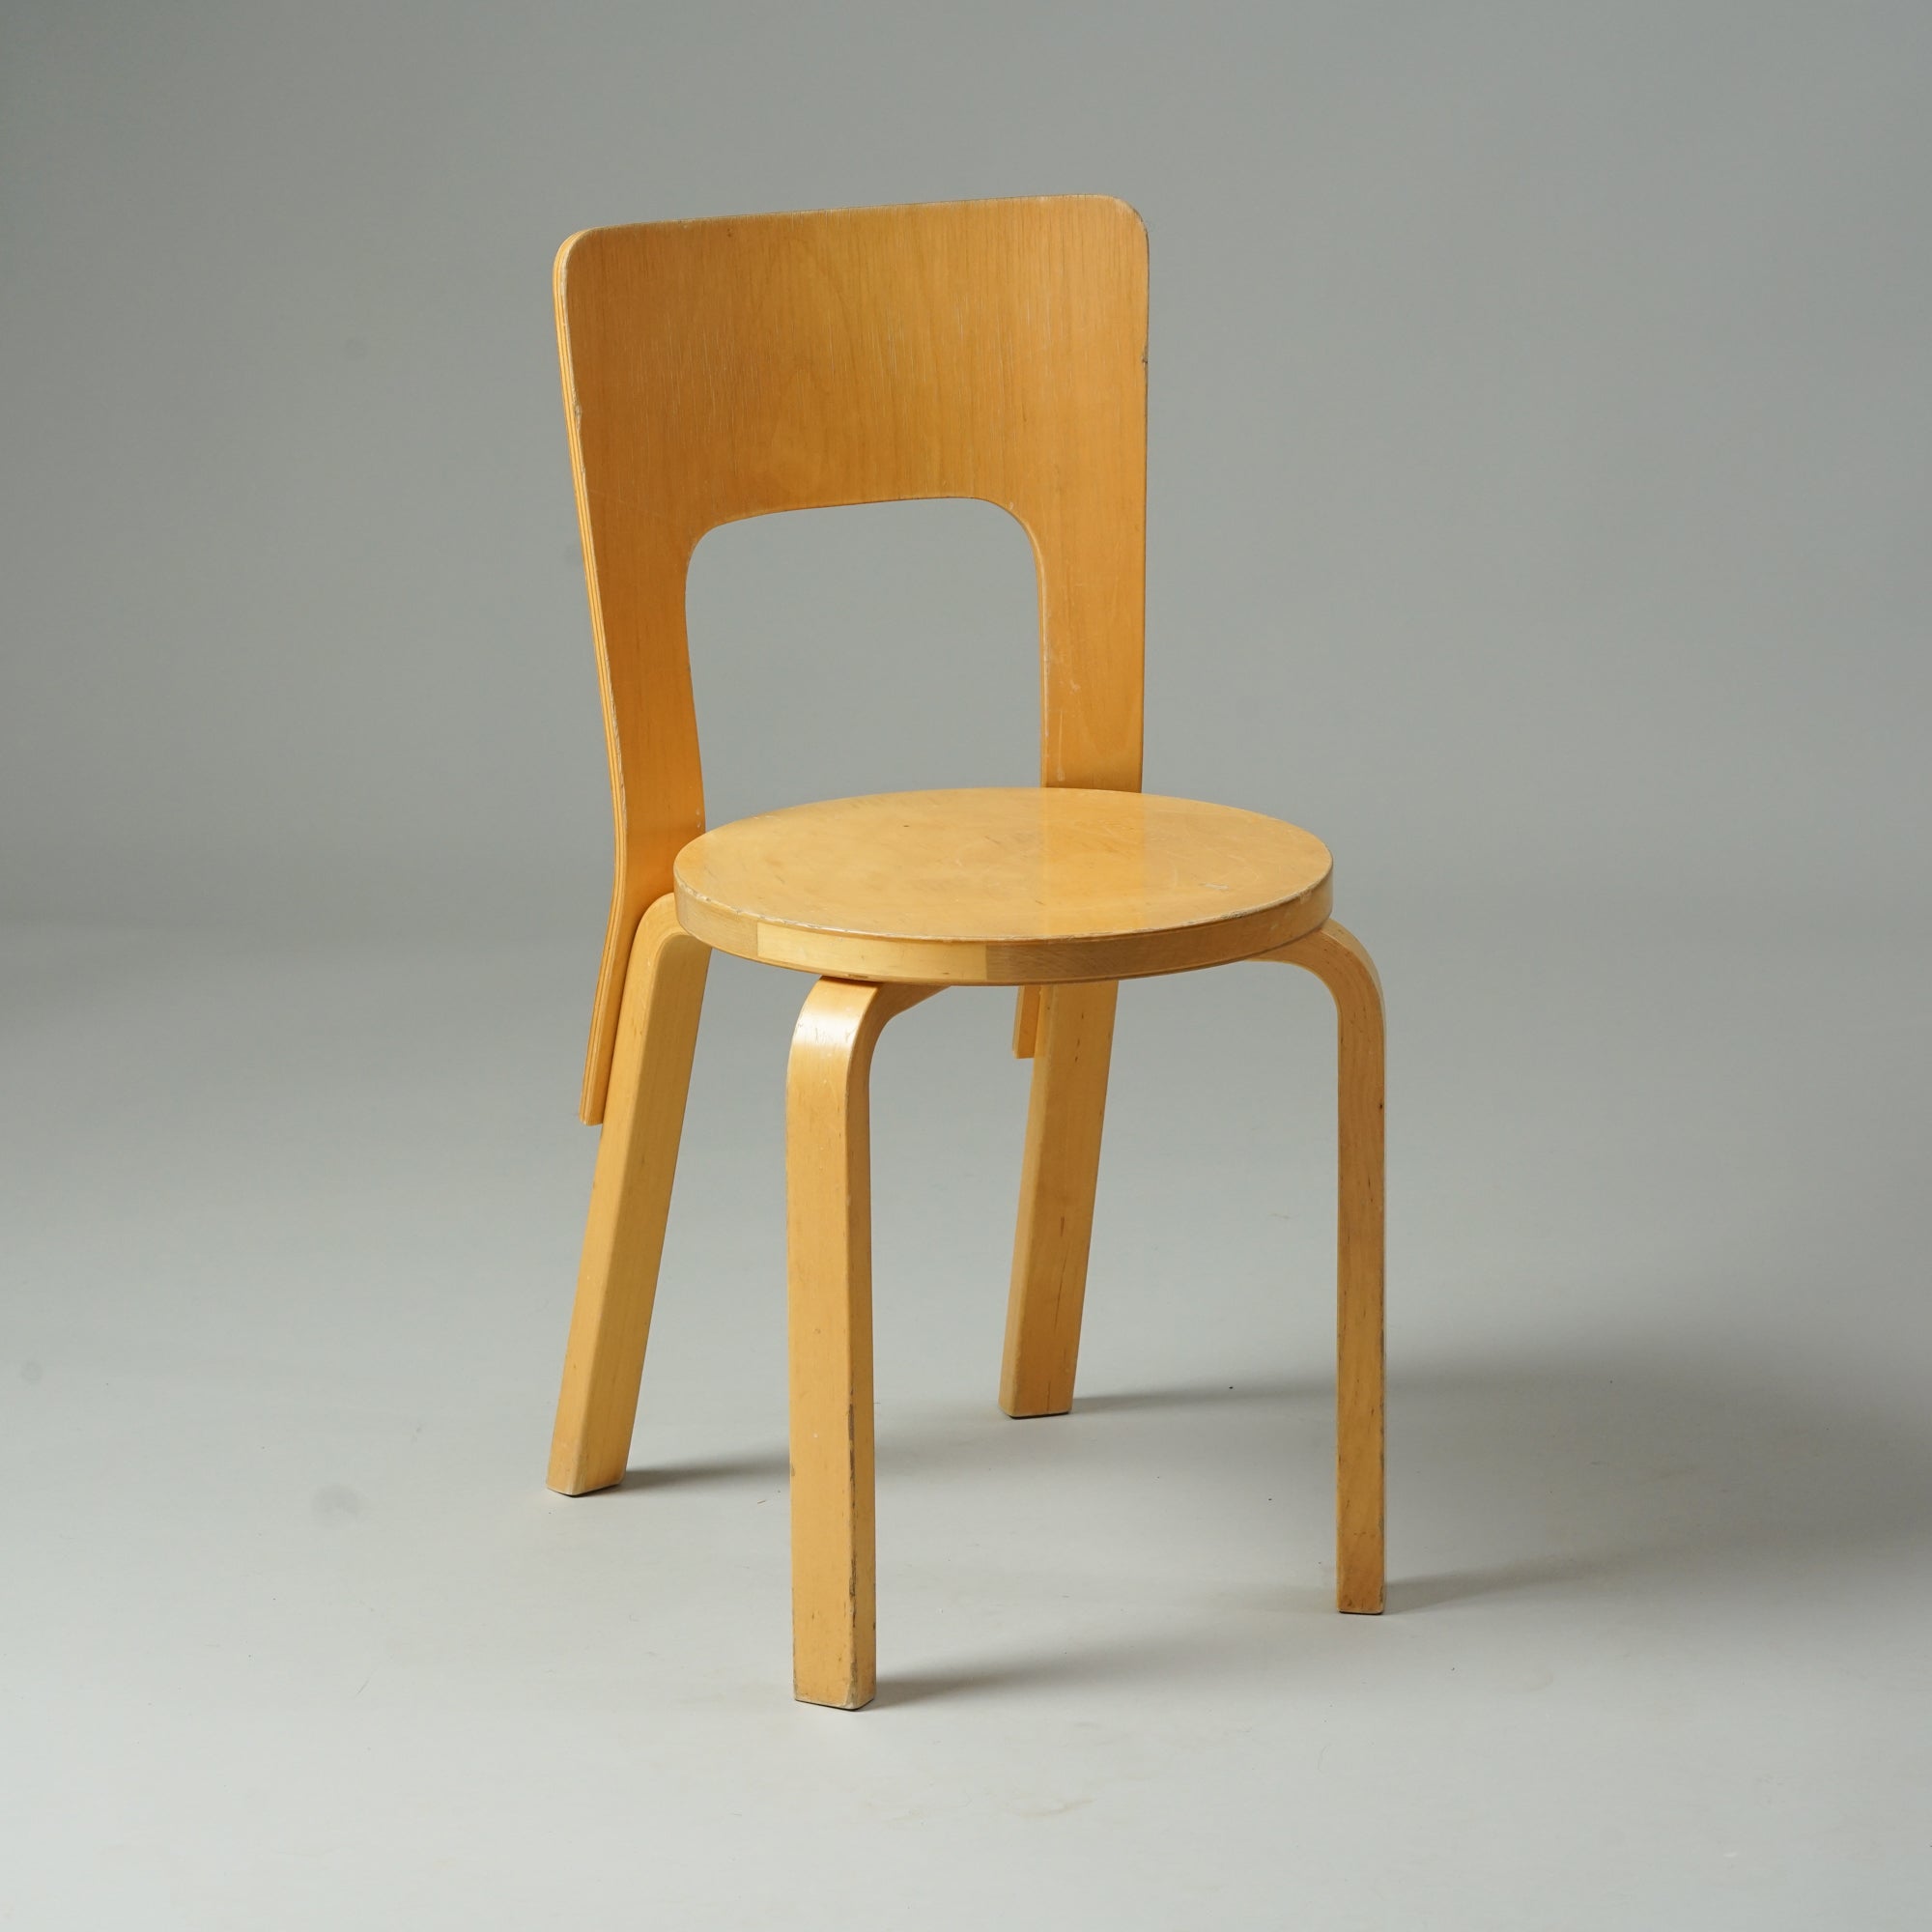 Koivusta tehty tuoli, jossa neljä jalkaa, selkänoja ja pyöreä istuin.